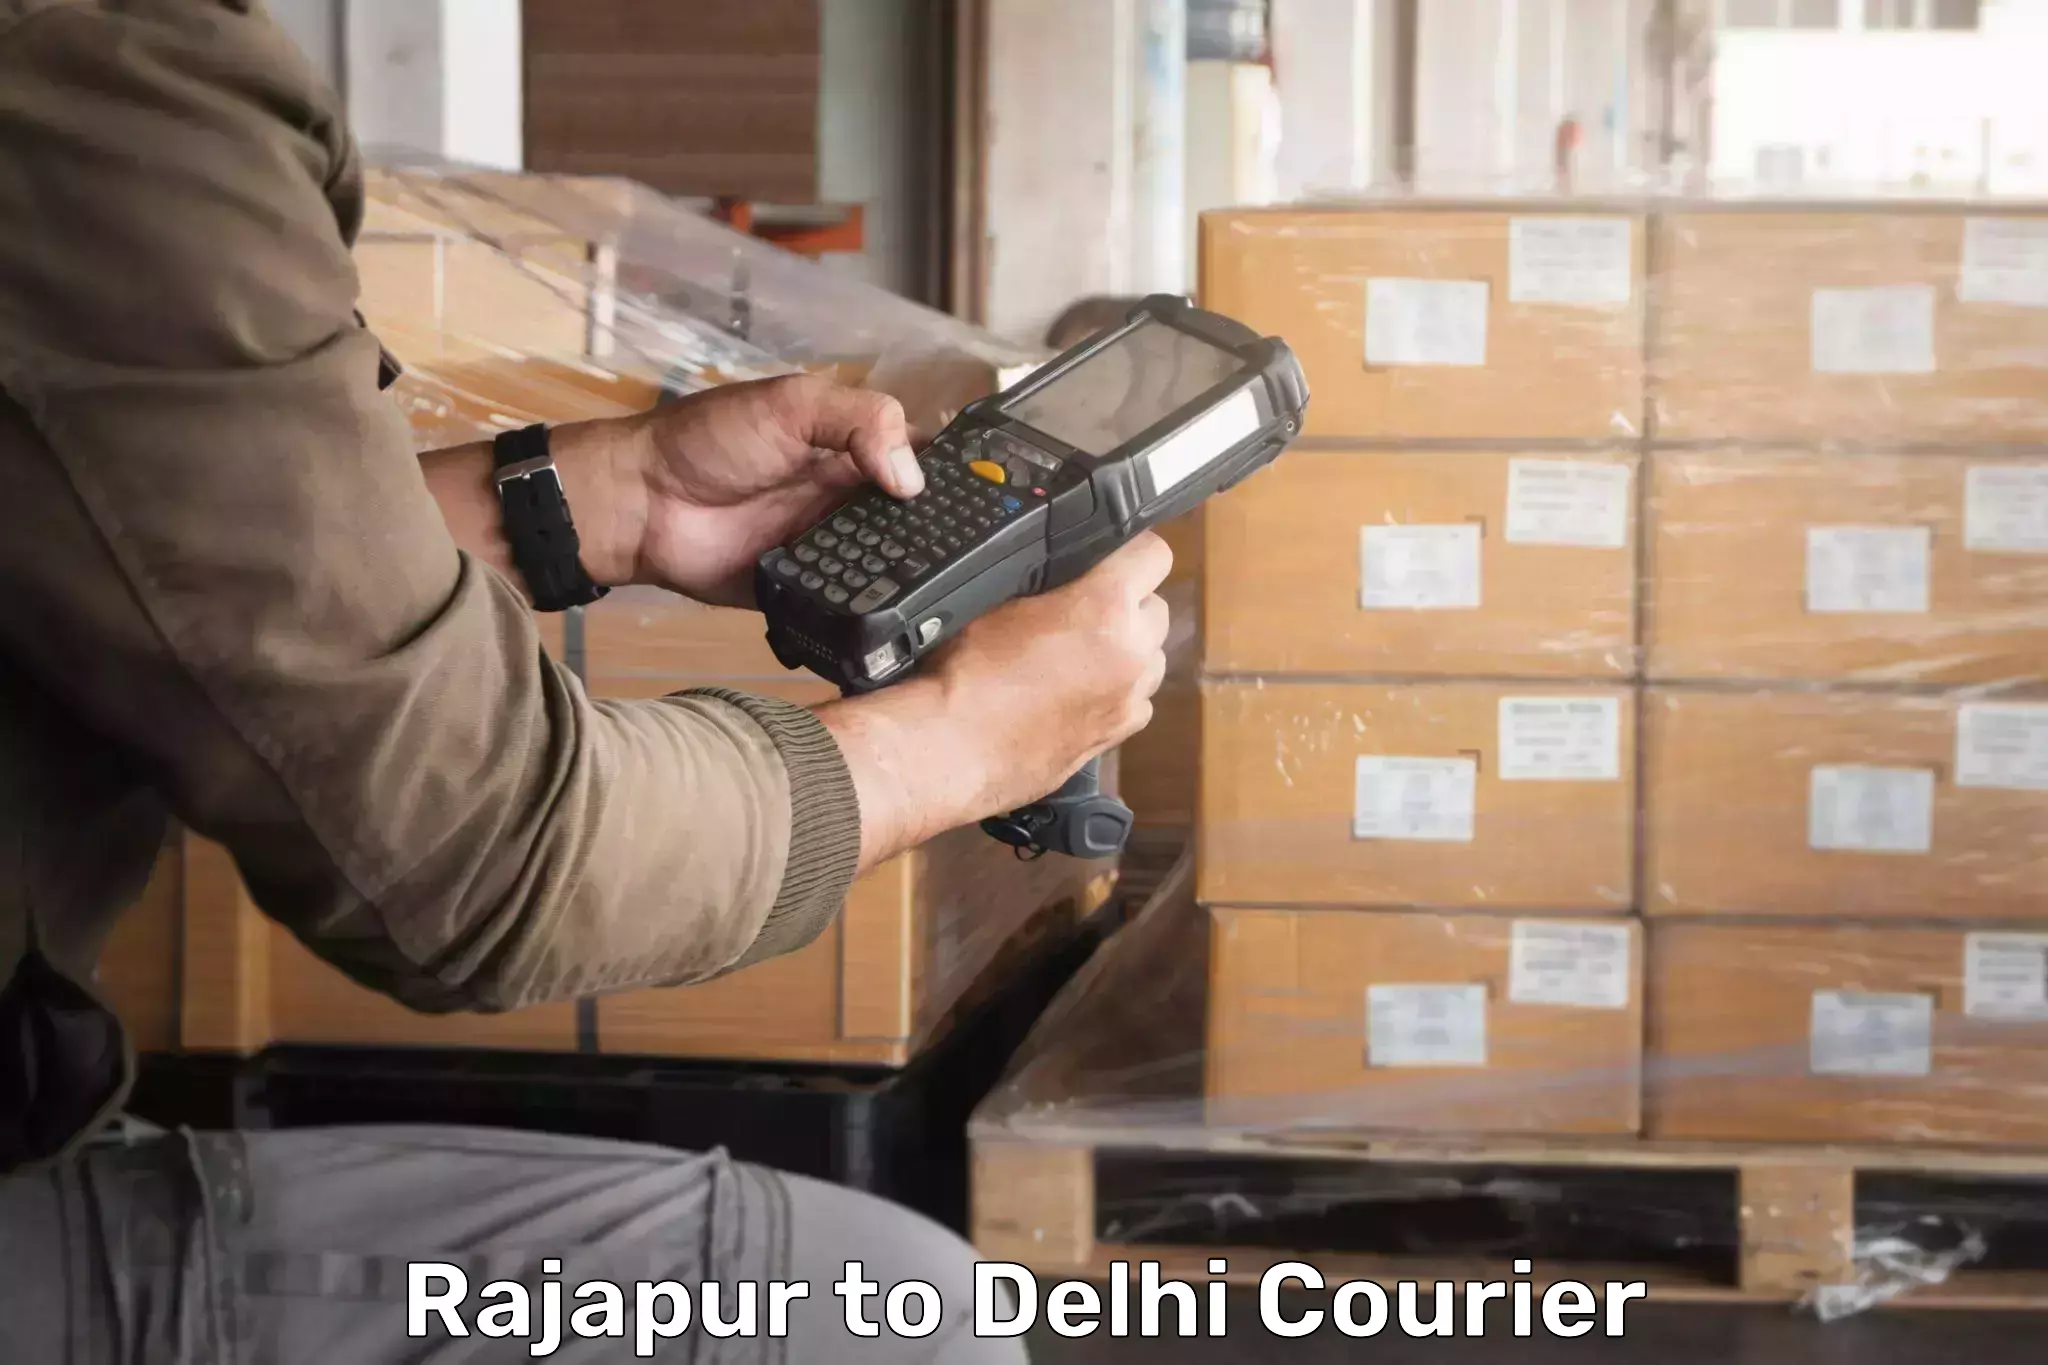 Reliable courier services Rajapur to Delhi